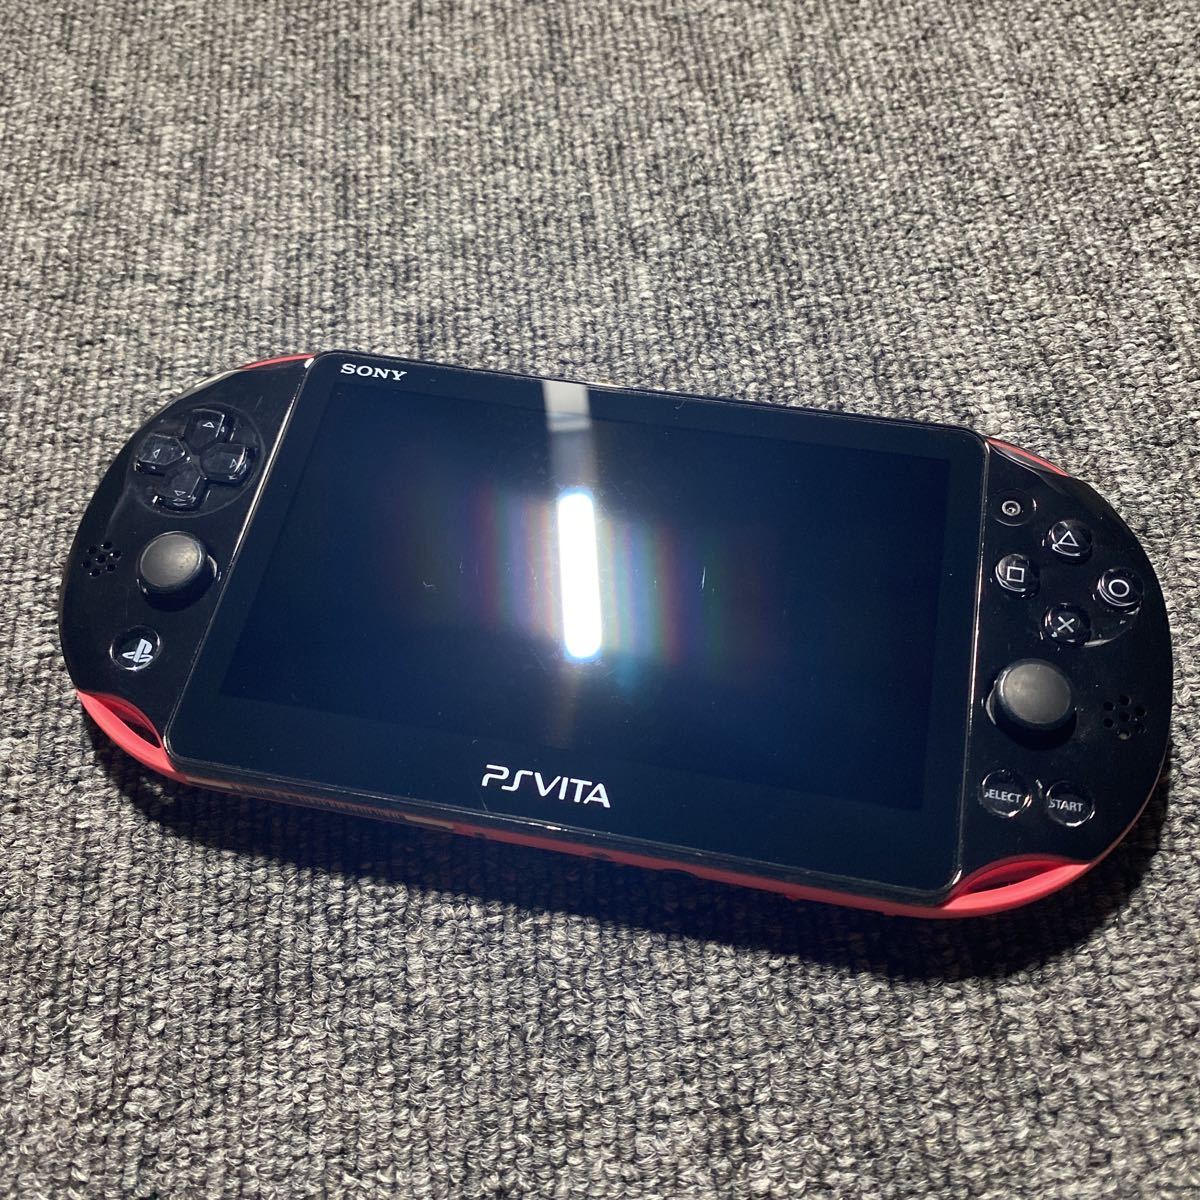 PS Vita PCH-2000 ピンクブラック 本体のみ(中古/送料無料)のヤフオク 